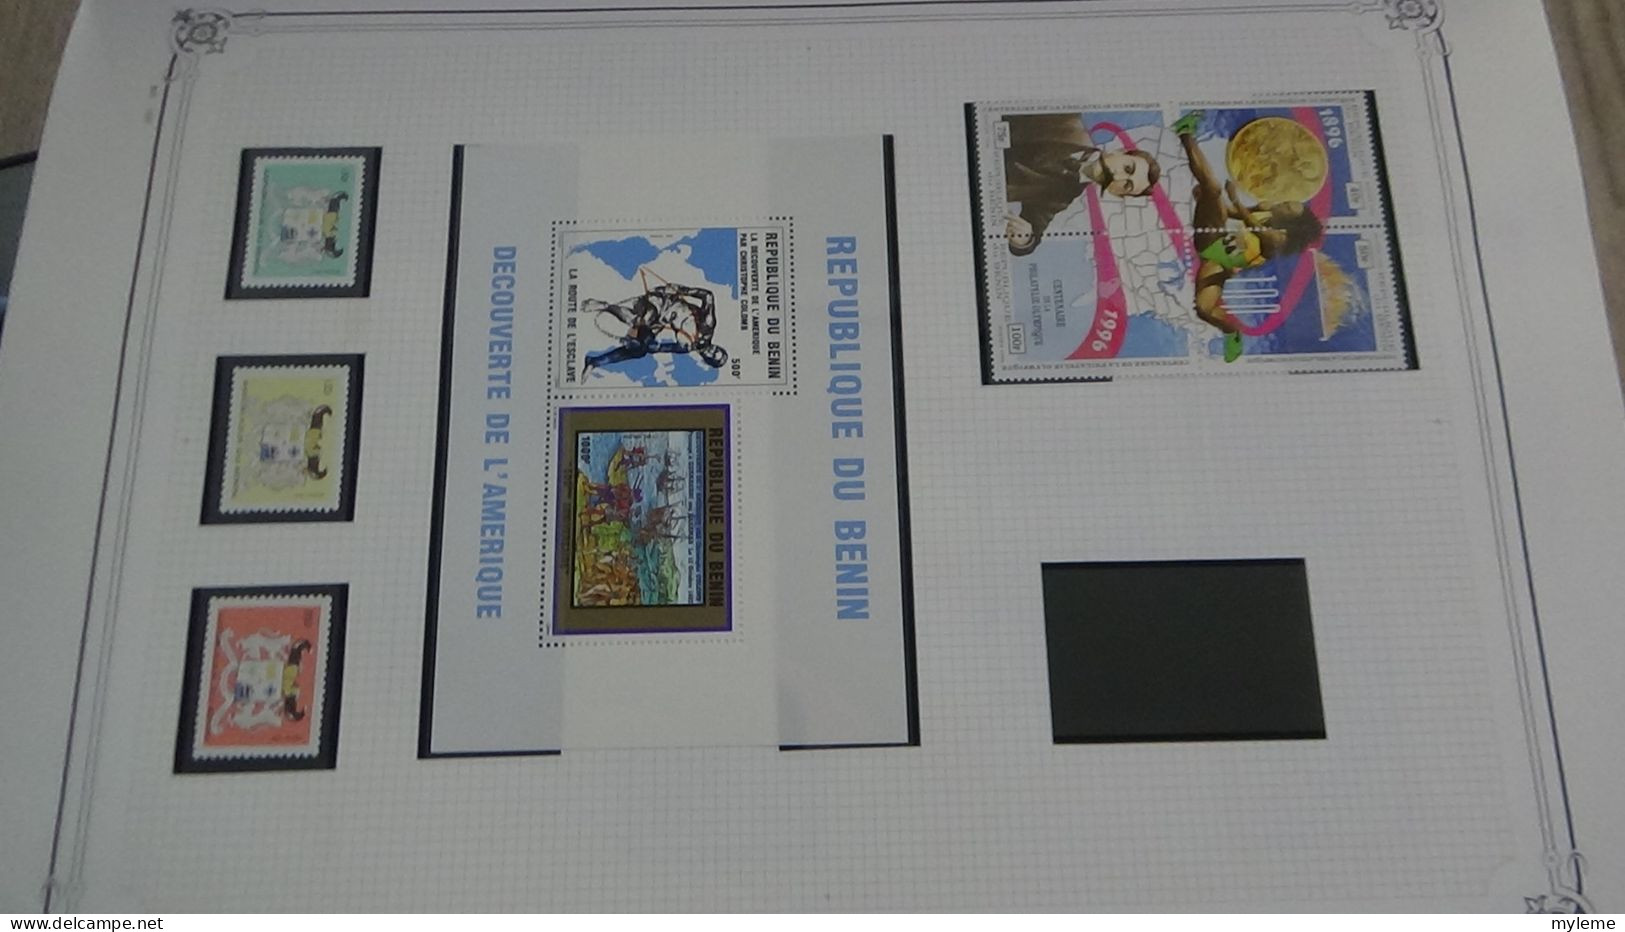 BC102 Collection de timbres et blocs ** du Bénin sur feuille d'album.  A saisir !!!